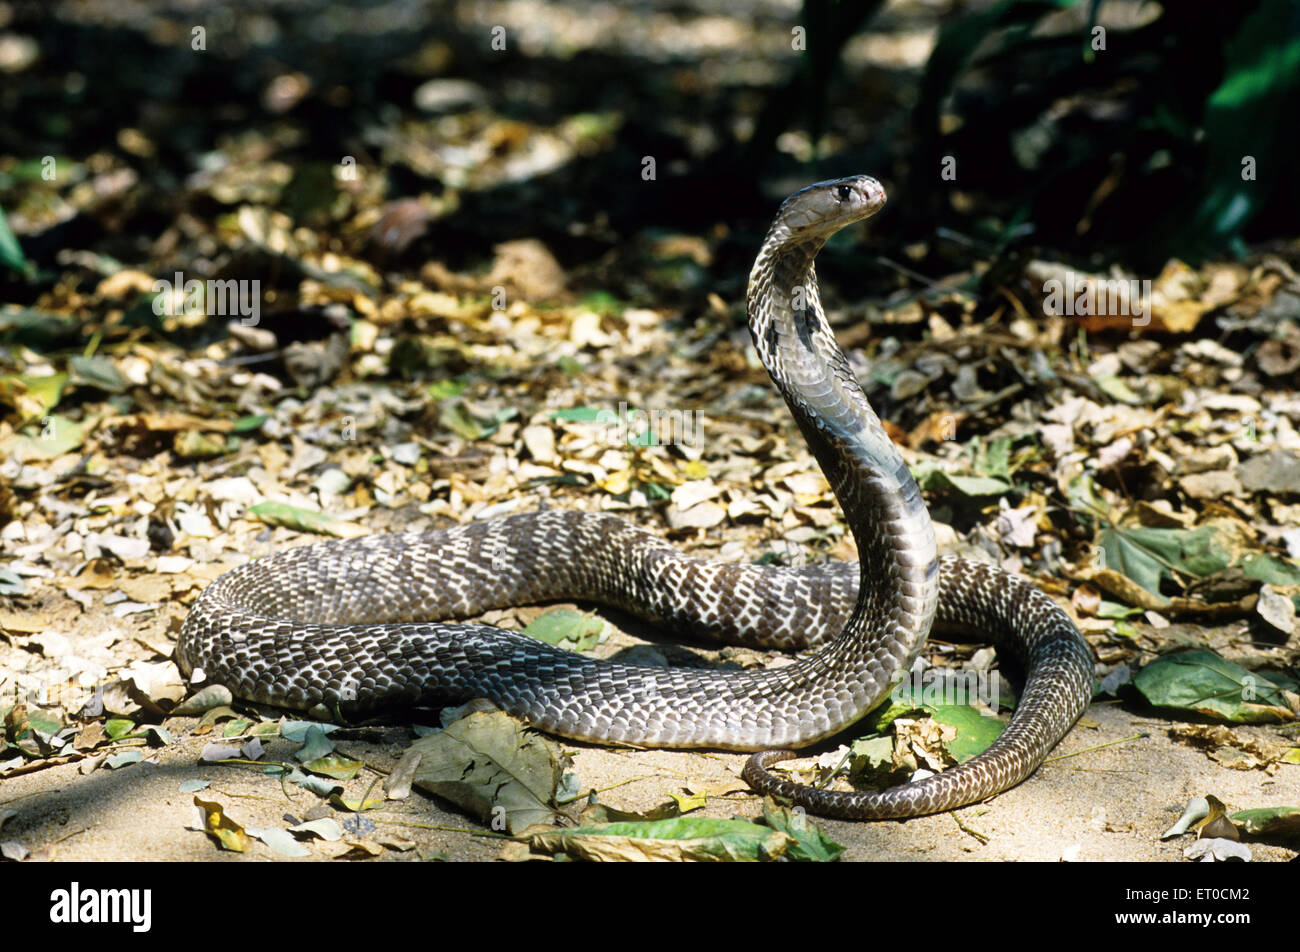 Indian spectacled cobra snake Naja naja naja Stock Photo